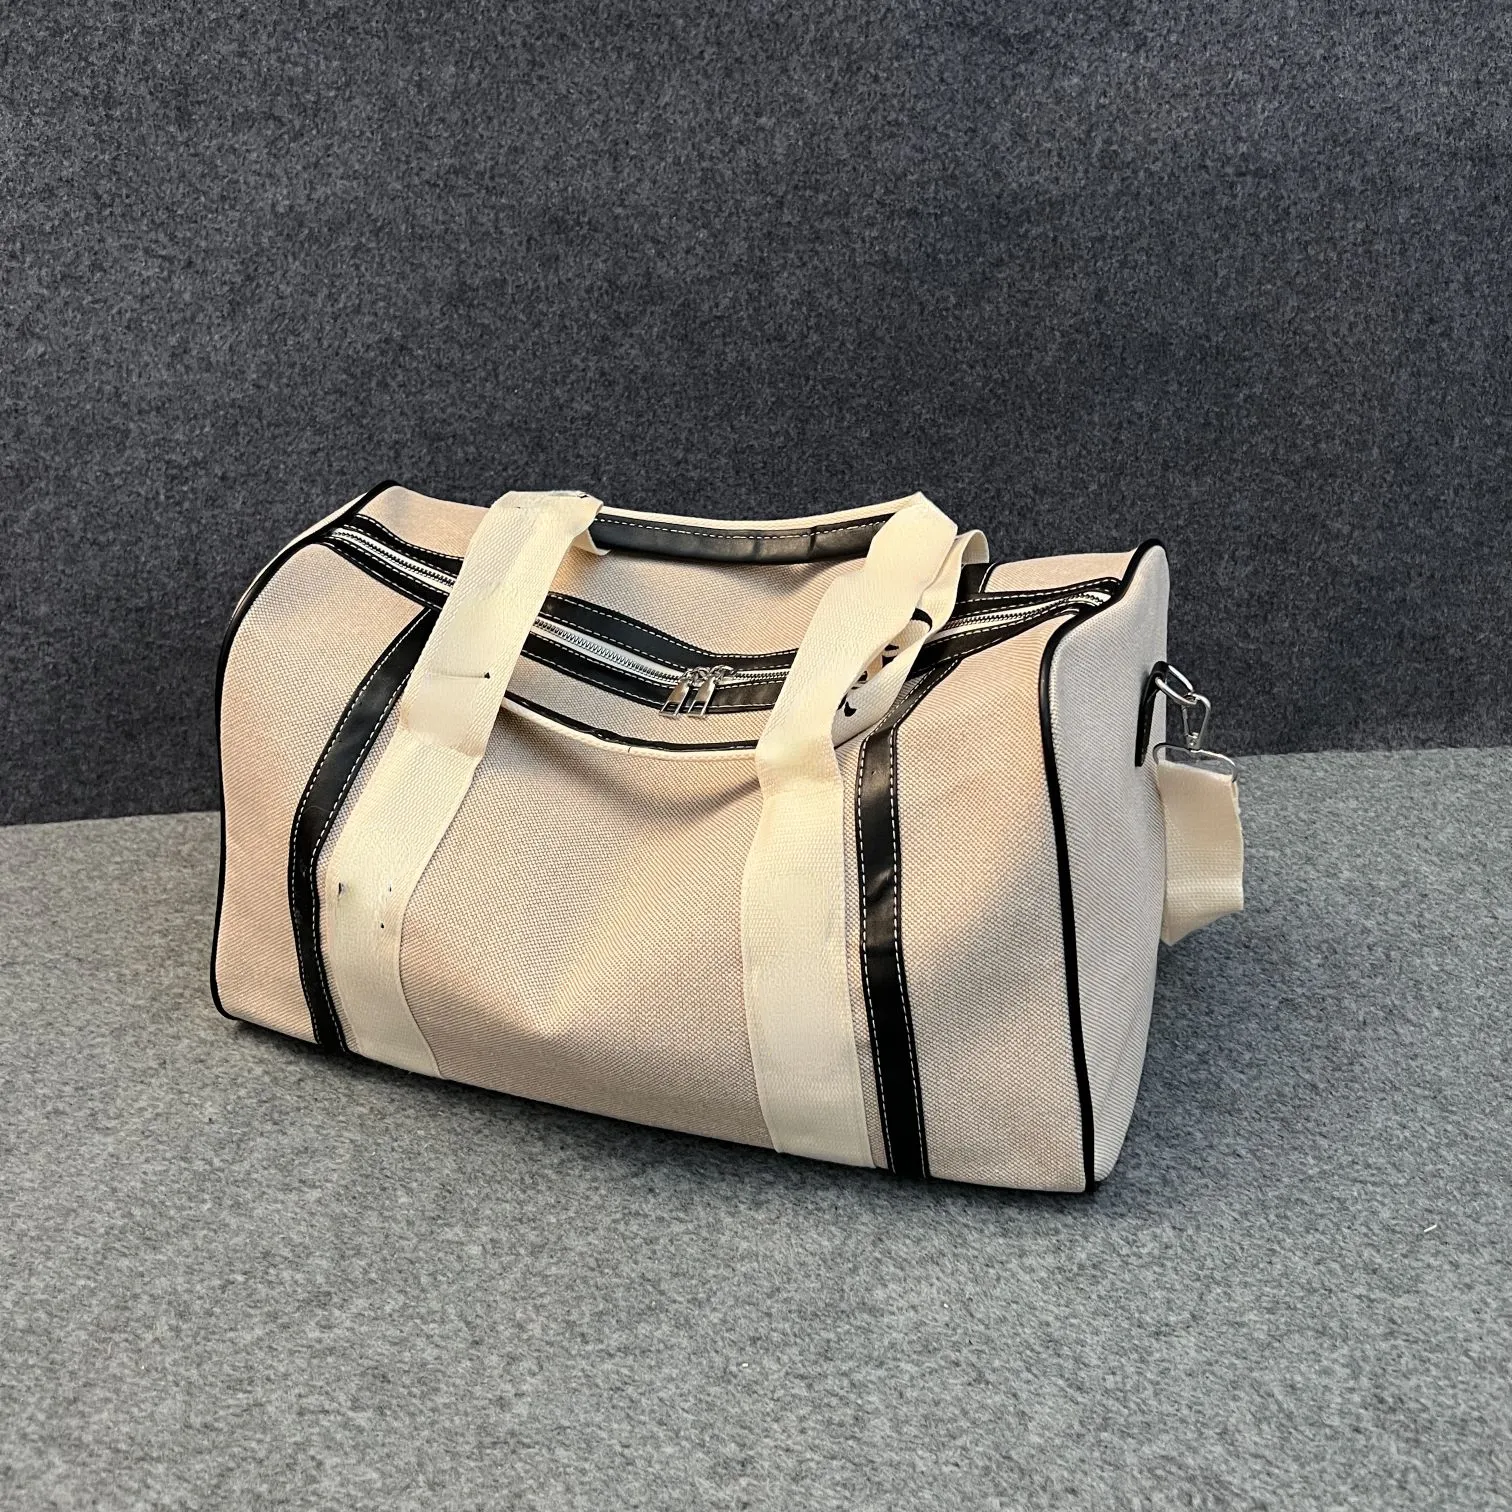 New fashion large capacity travel bag